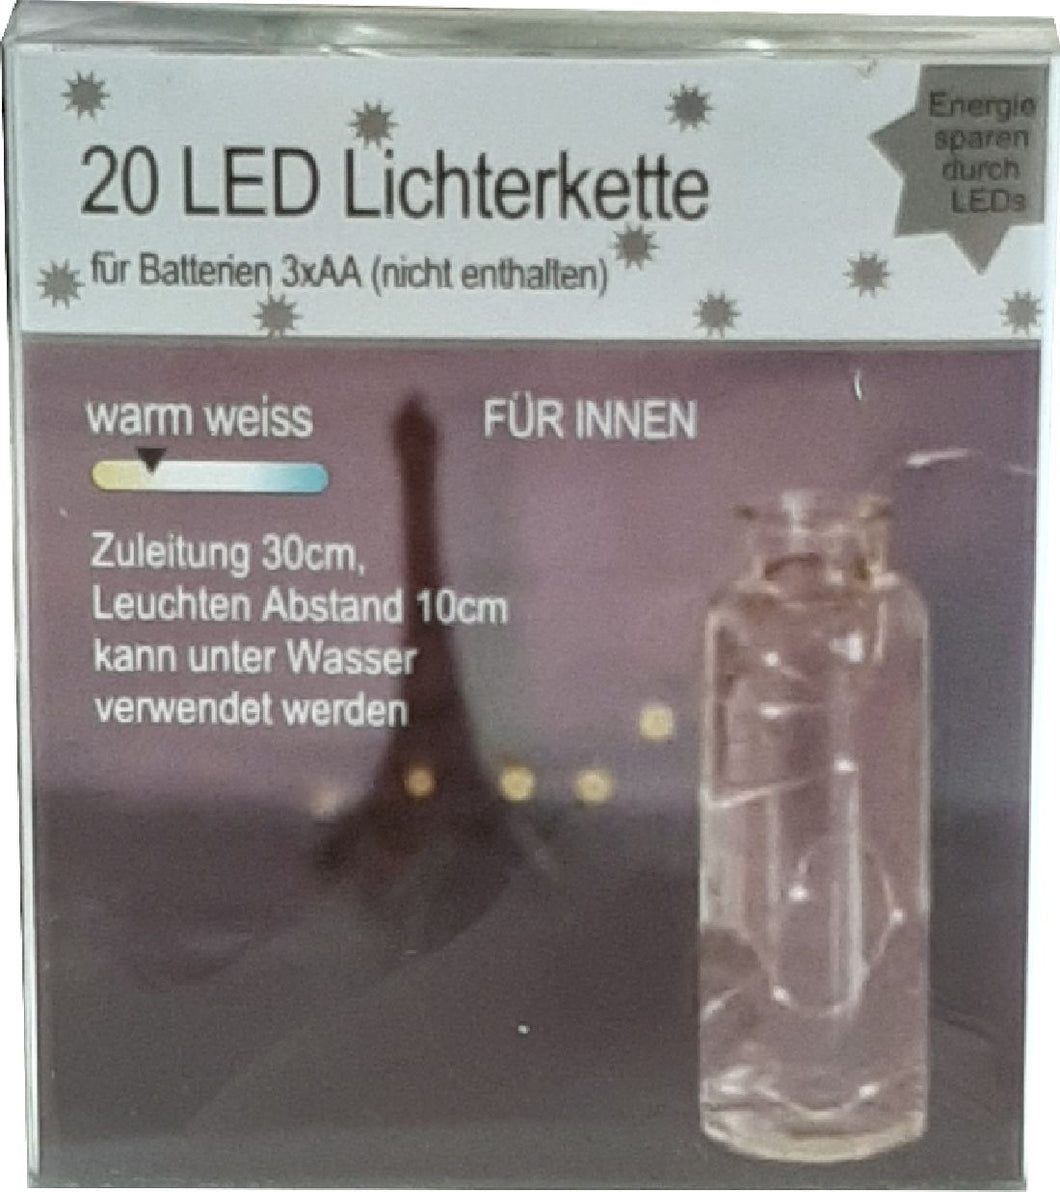 LED Lichterkette 20er / warmweiß / Drahtlichterkette batteriebetrieben 3xAA